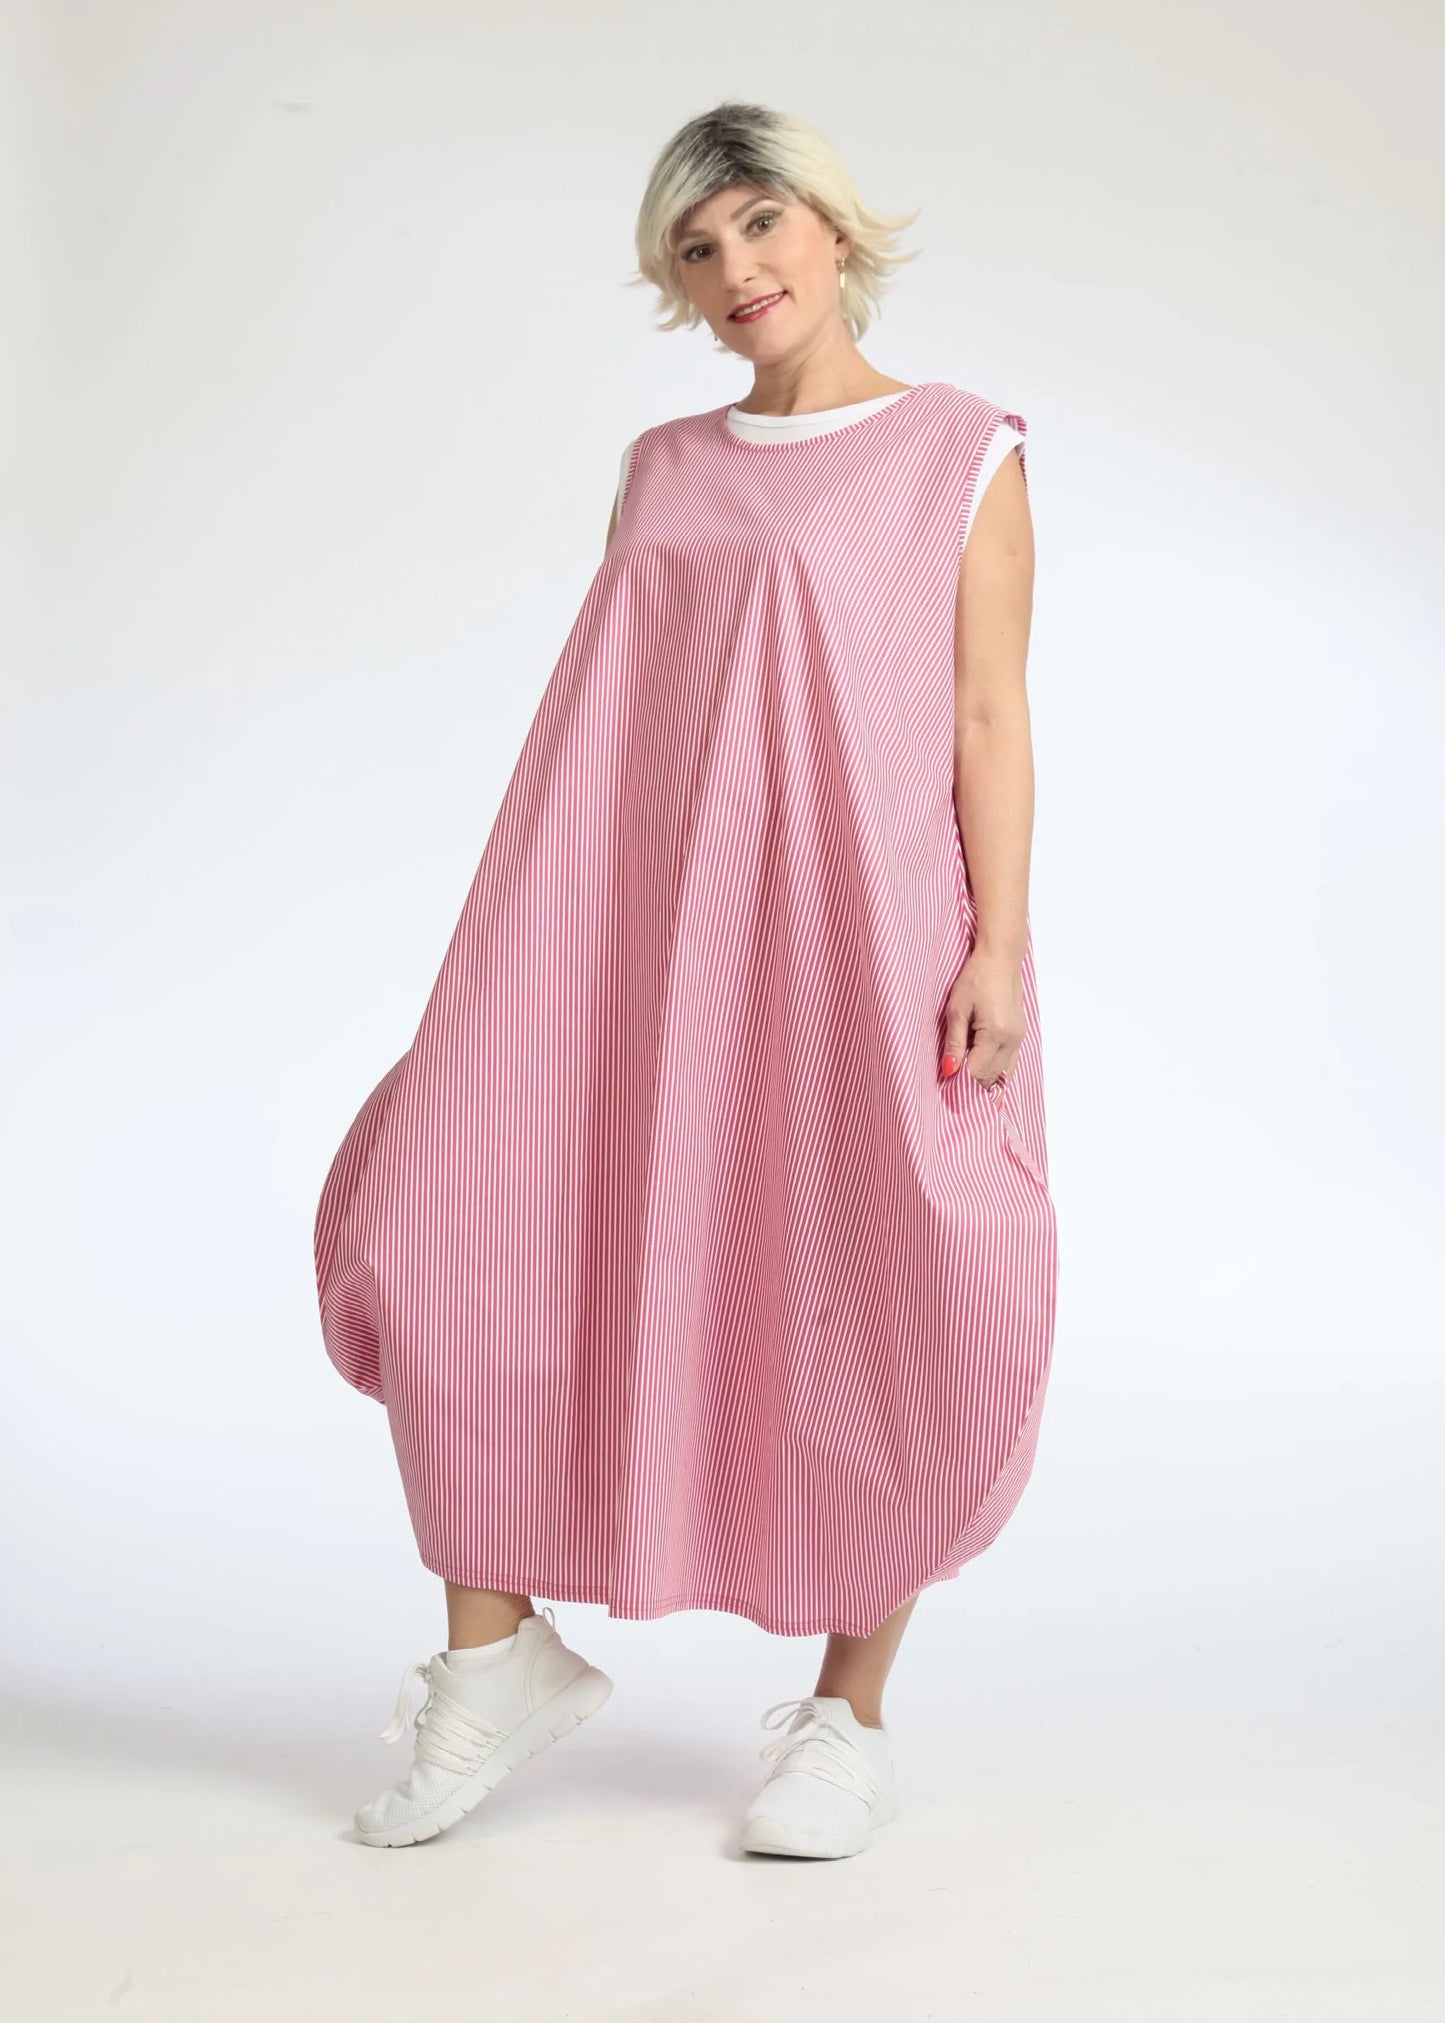 Sommer Kleid in Ballon Form aus glatter Popeline Qualität, Verena in Pink-Weiß